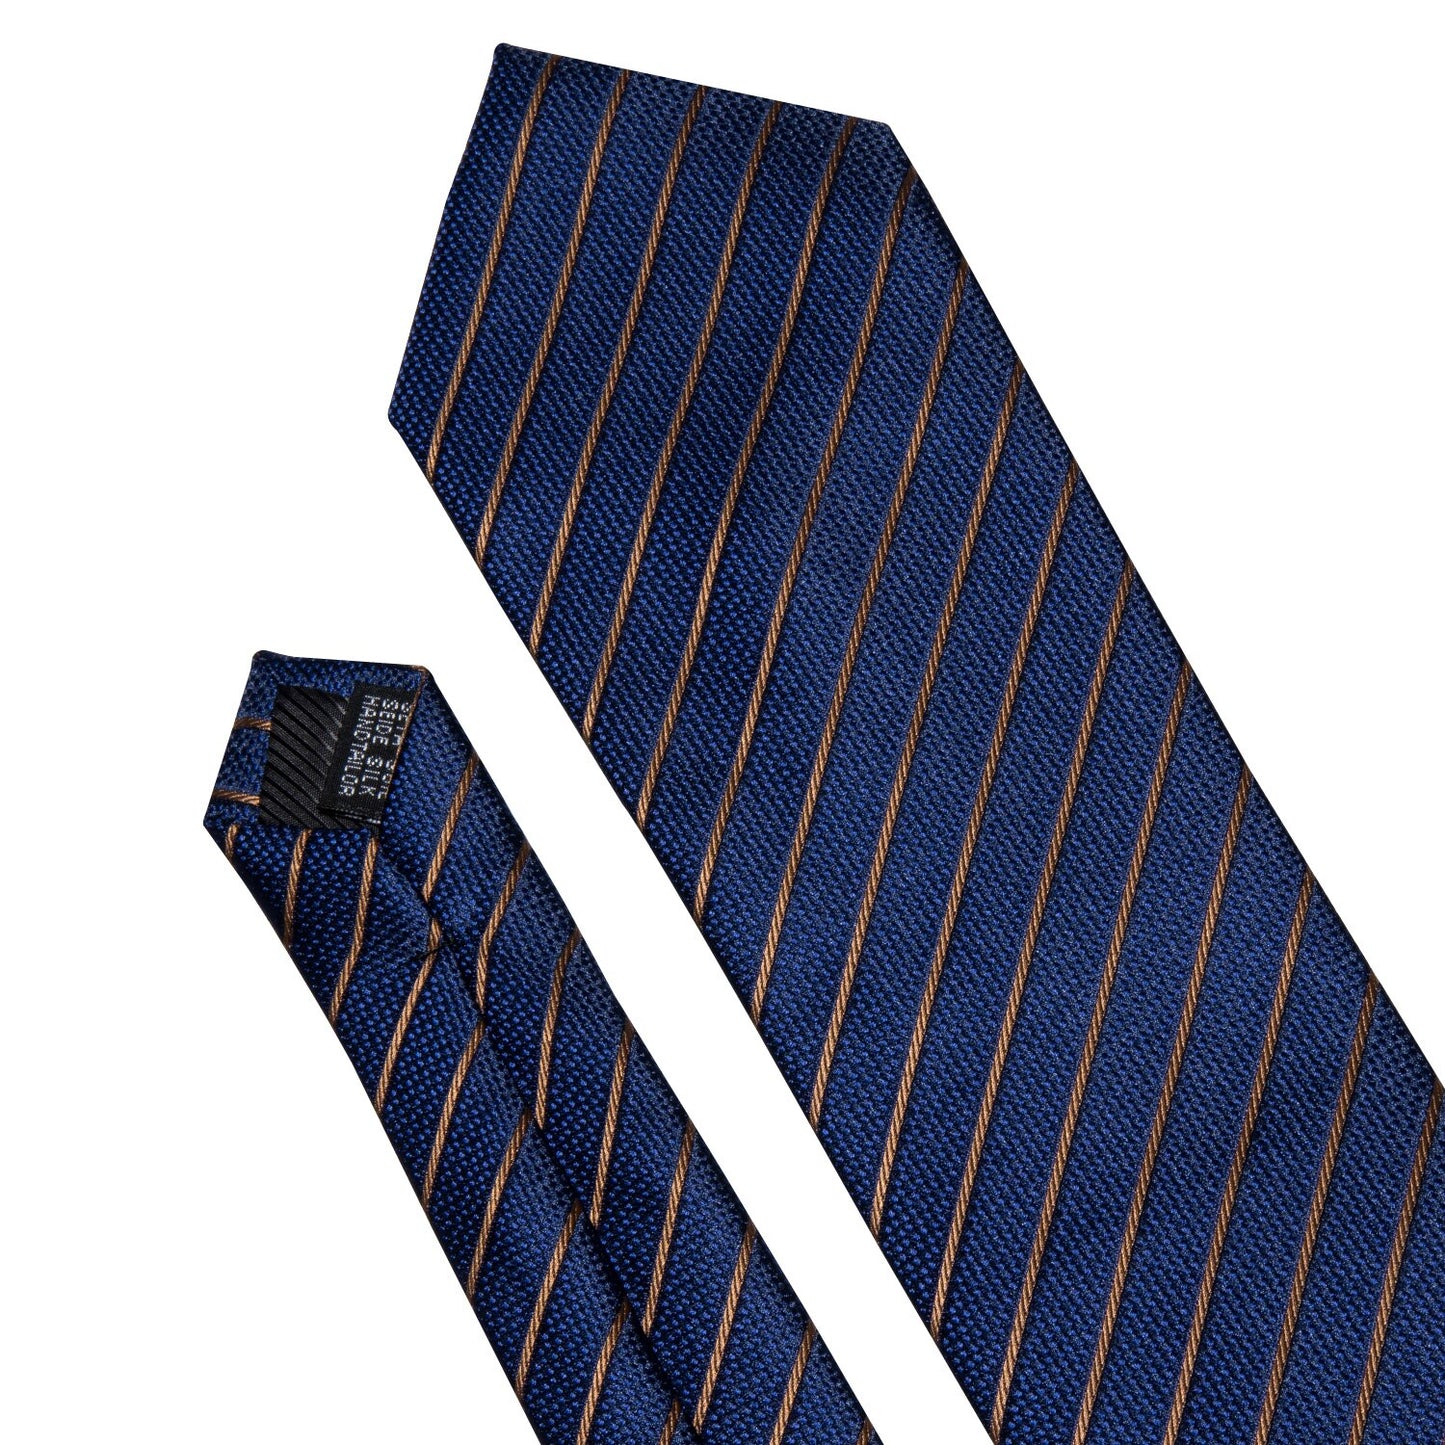 Men Tie Gold Navy Striped 100% Silk Tie